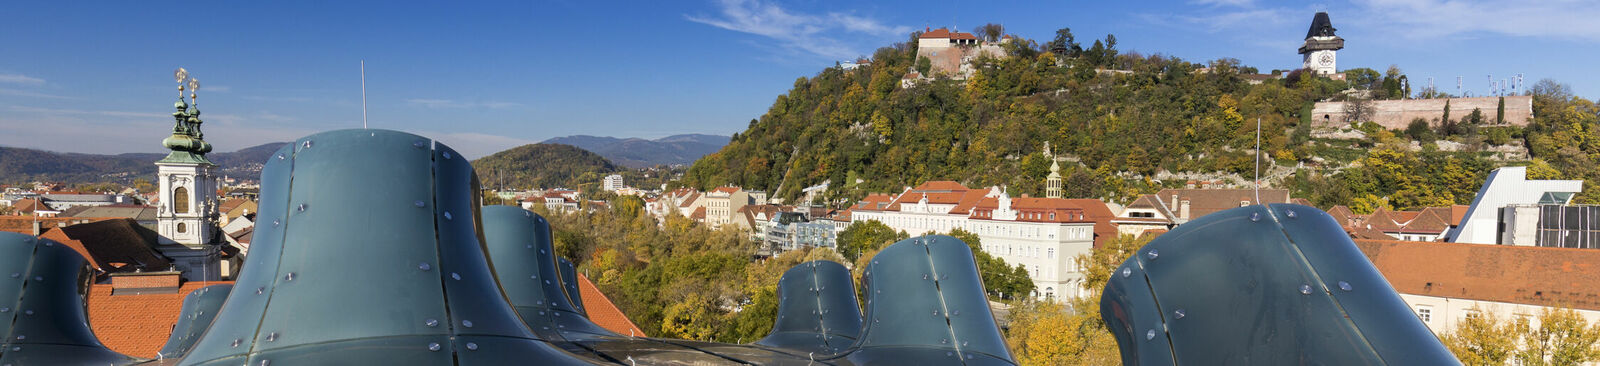 Graz mit Kunsthaus und Schlossberg